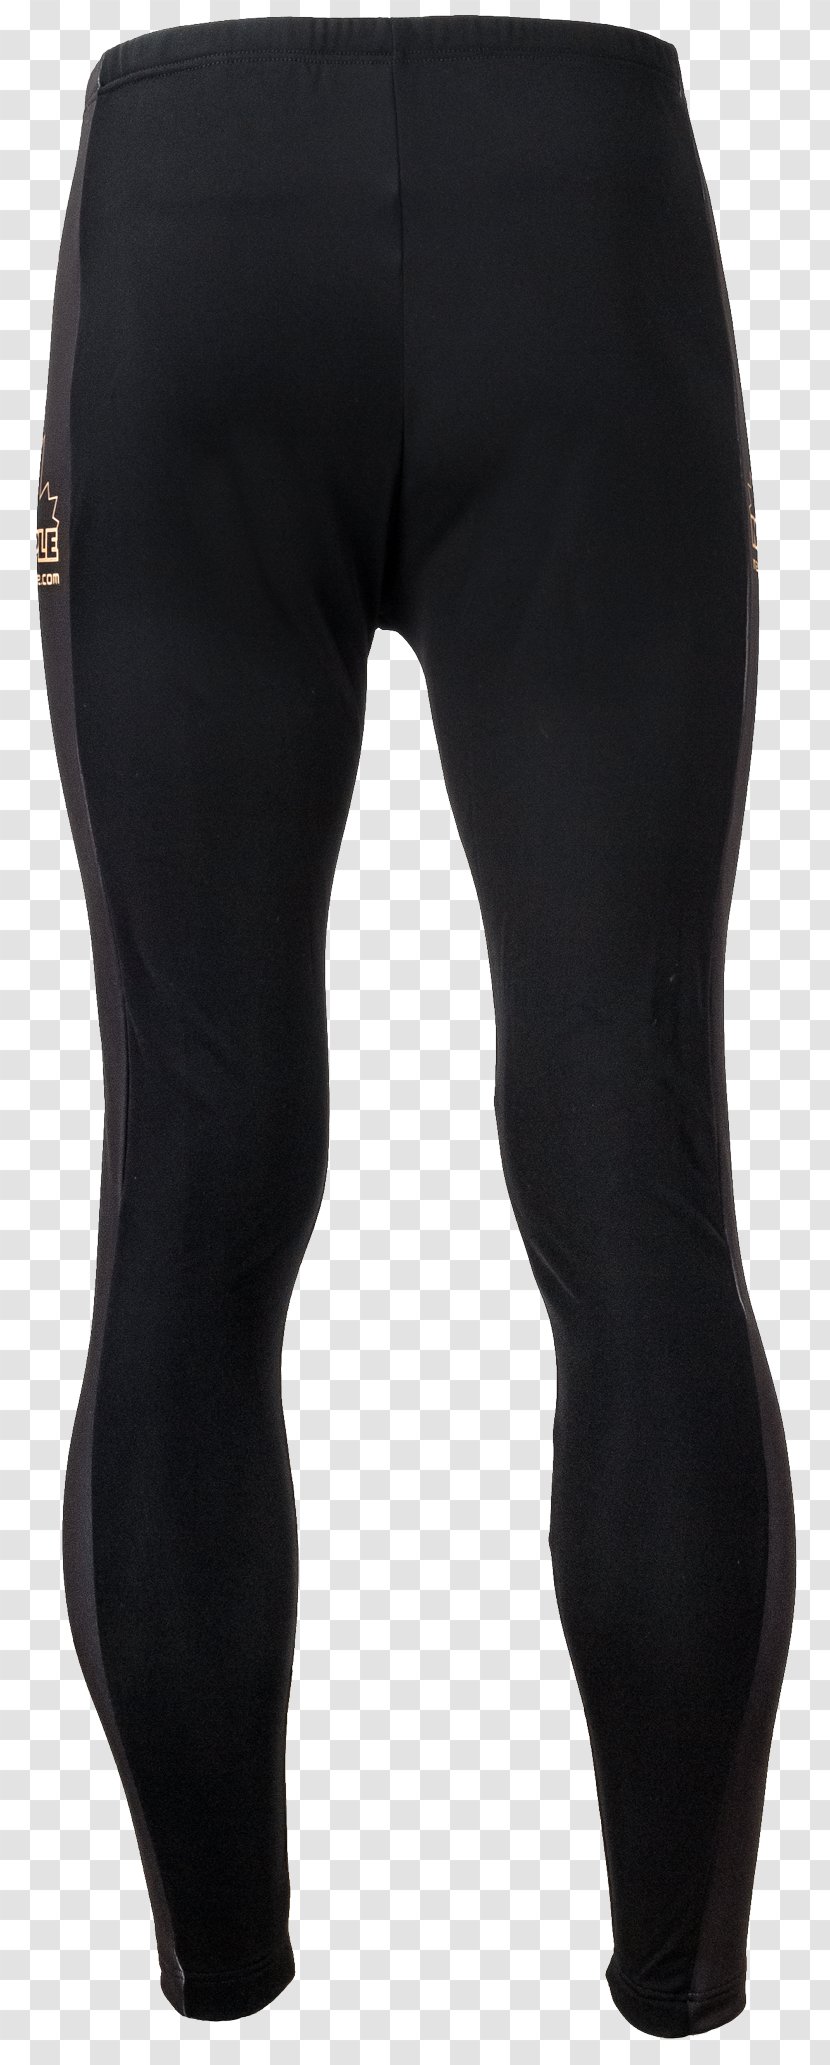 Klim Amazon.com Online Shopping Pants Sleeve - Watercolor - Zipper Transparent PNG